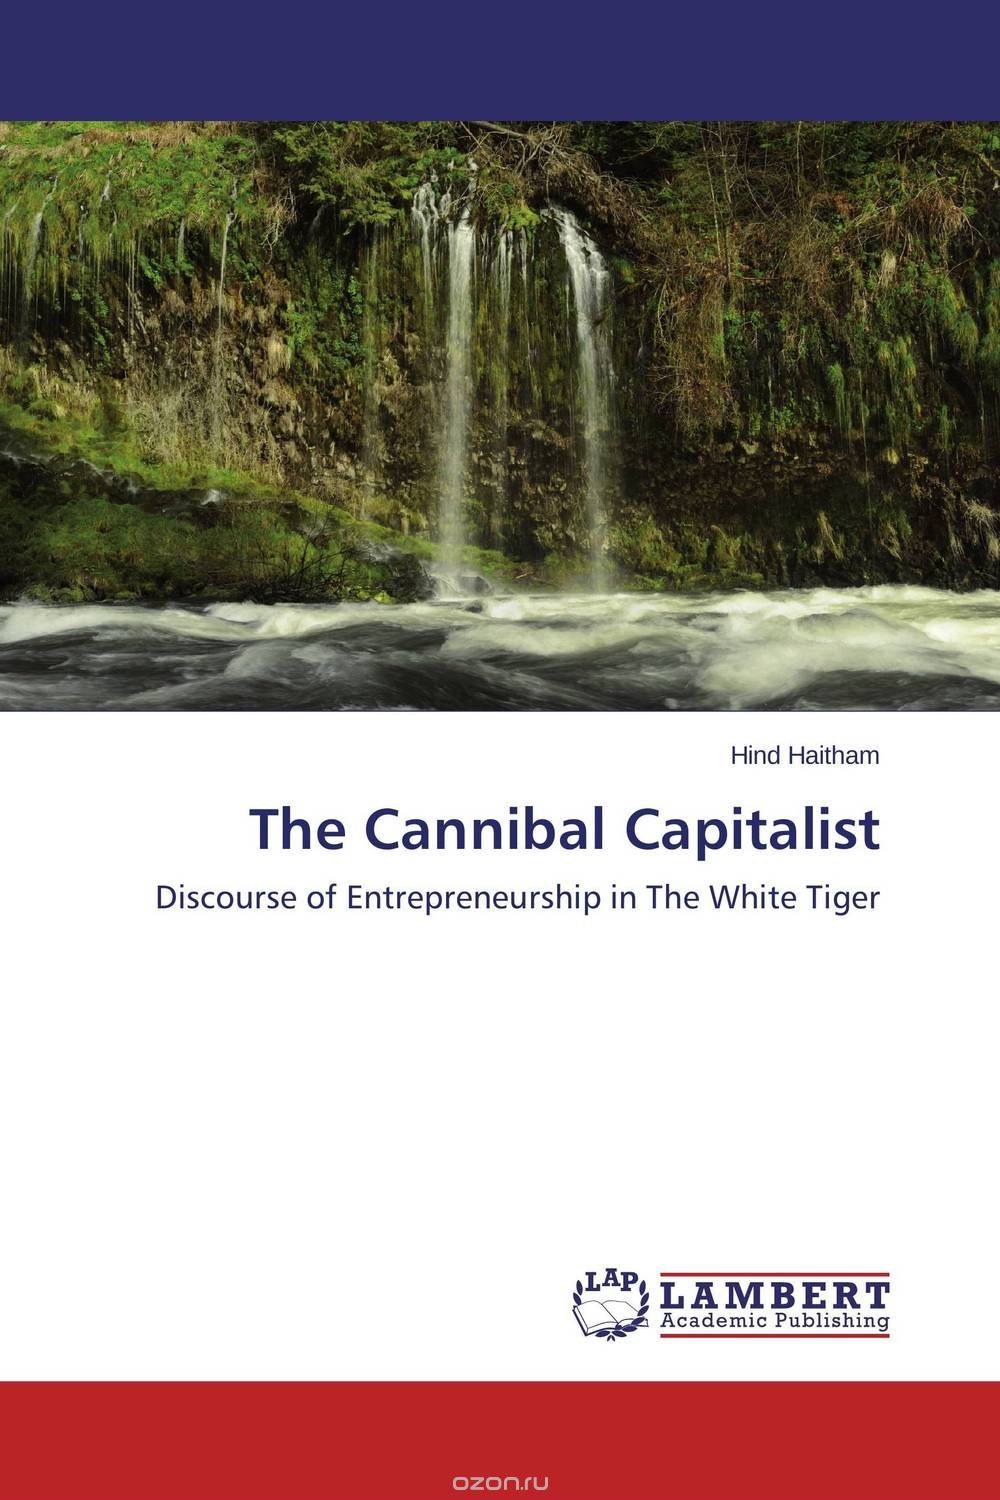 The Cannibal Capitalist